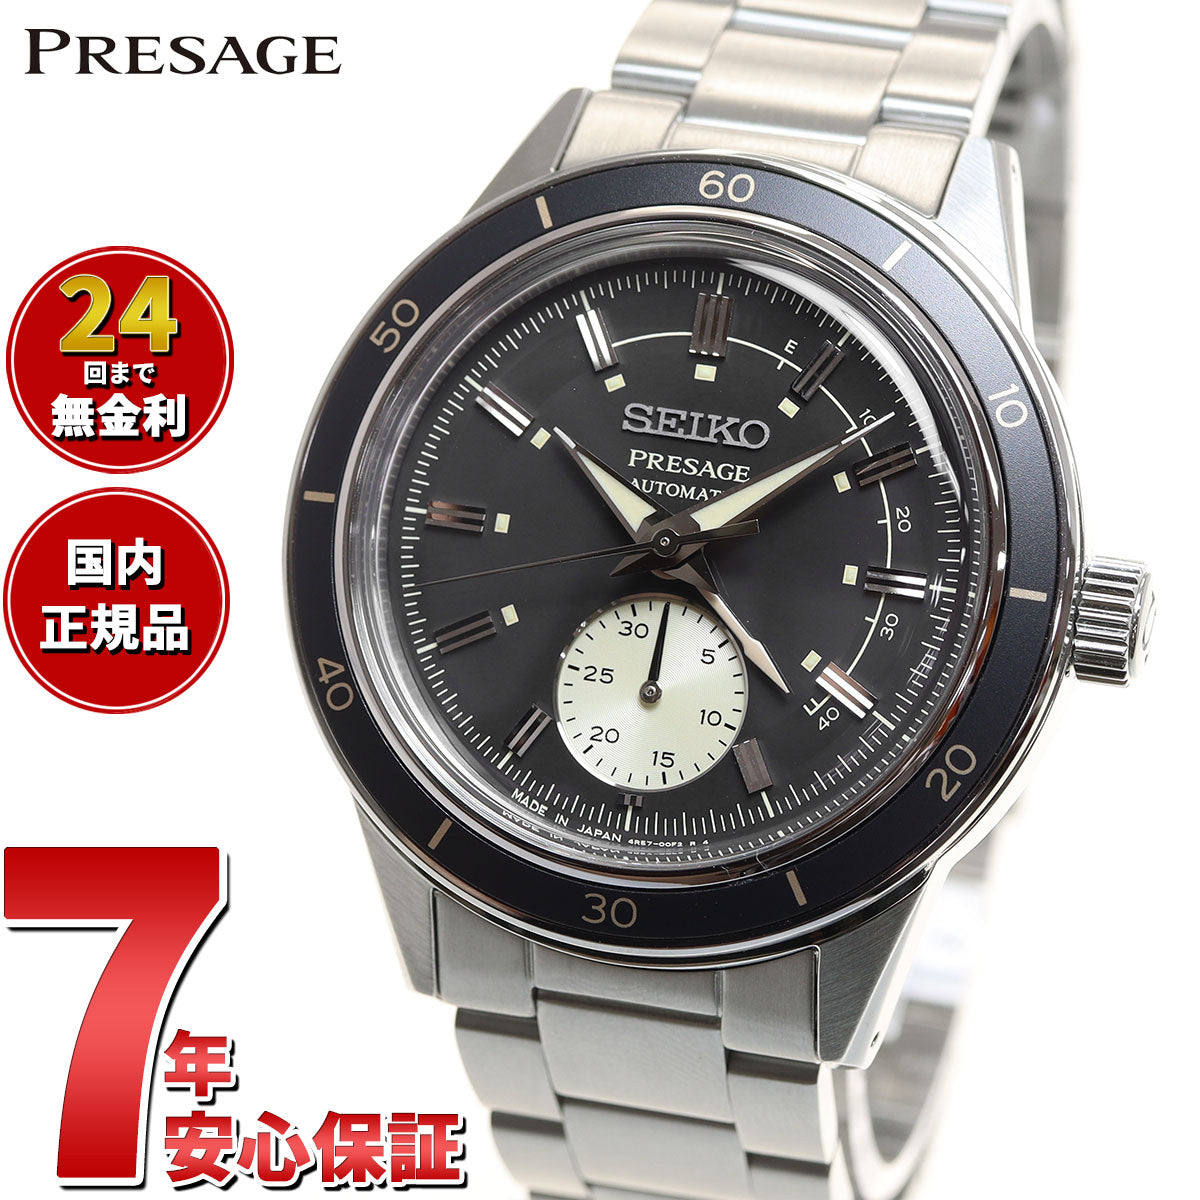 27,963円メンズ 腕時計 セイコー プレザージュ SARY211 18ok